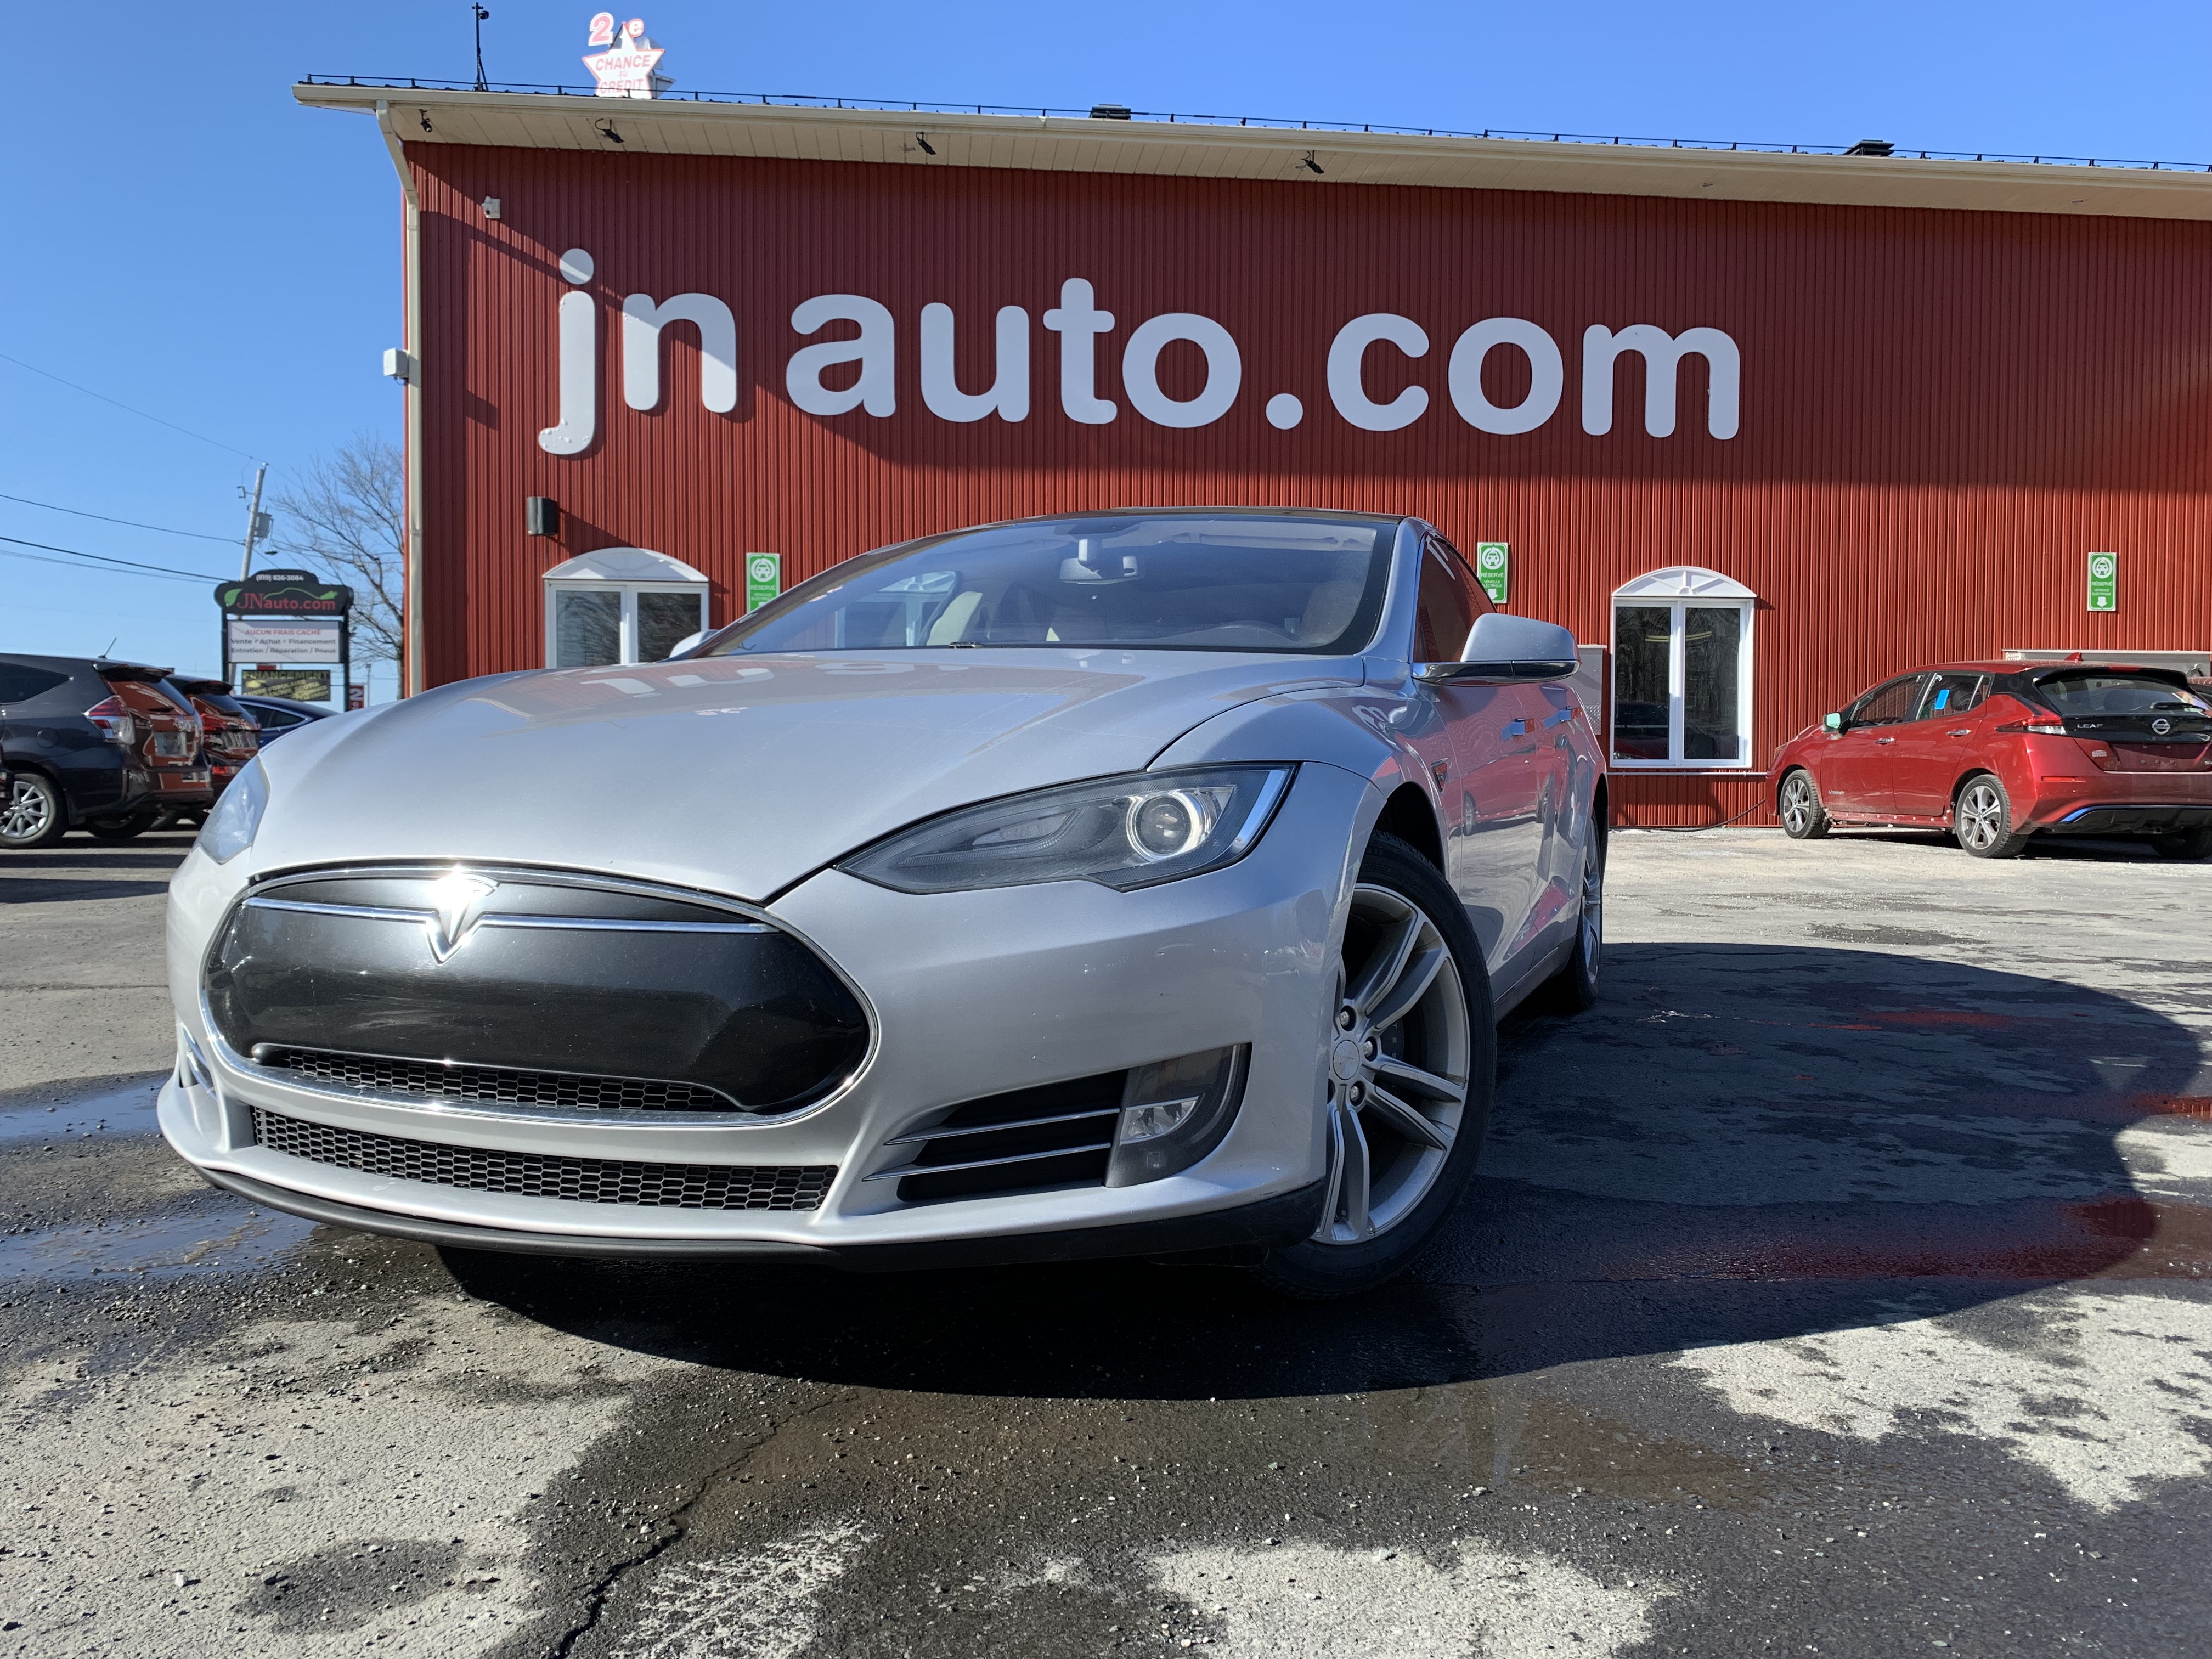 JN auto Tesla Model S85 SC gratuit, toit ouvrant, 2013 8608459 Image principale